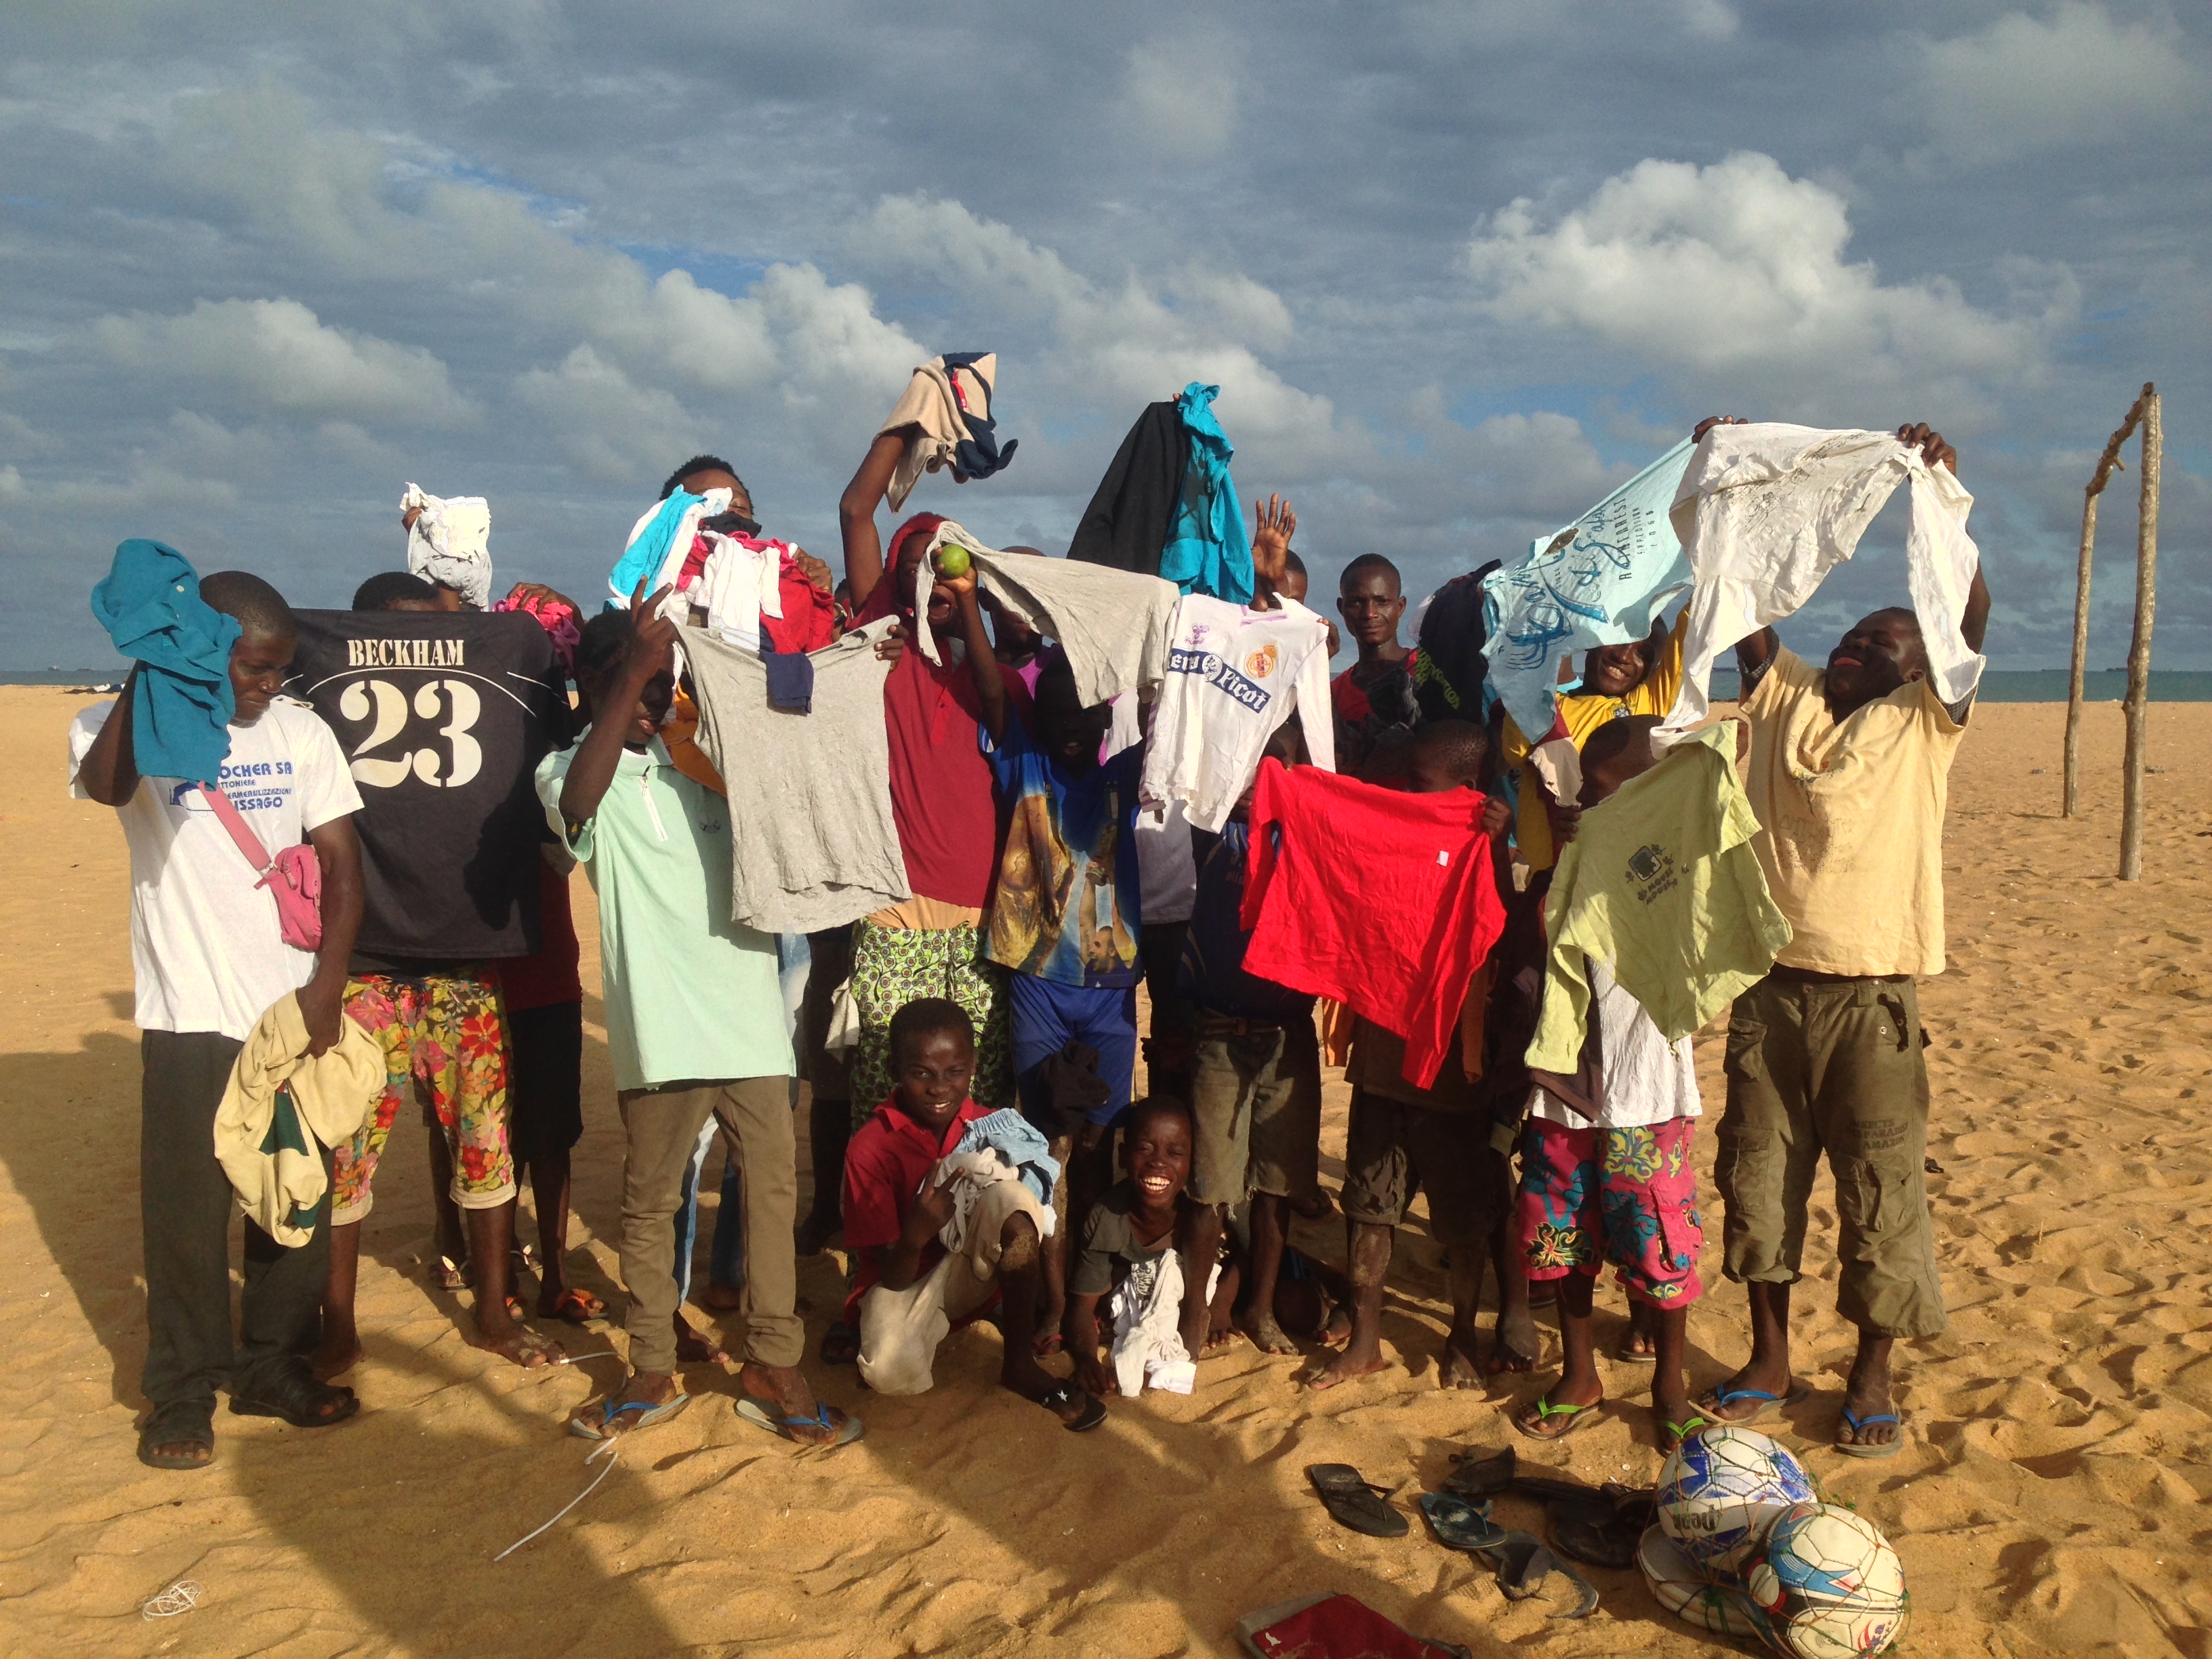 Mission vêtements : Distribution d’habits pour les enfants des rues (Avril/mai 2014)